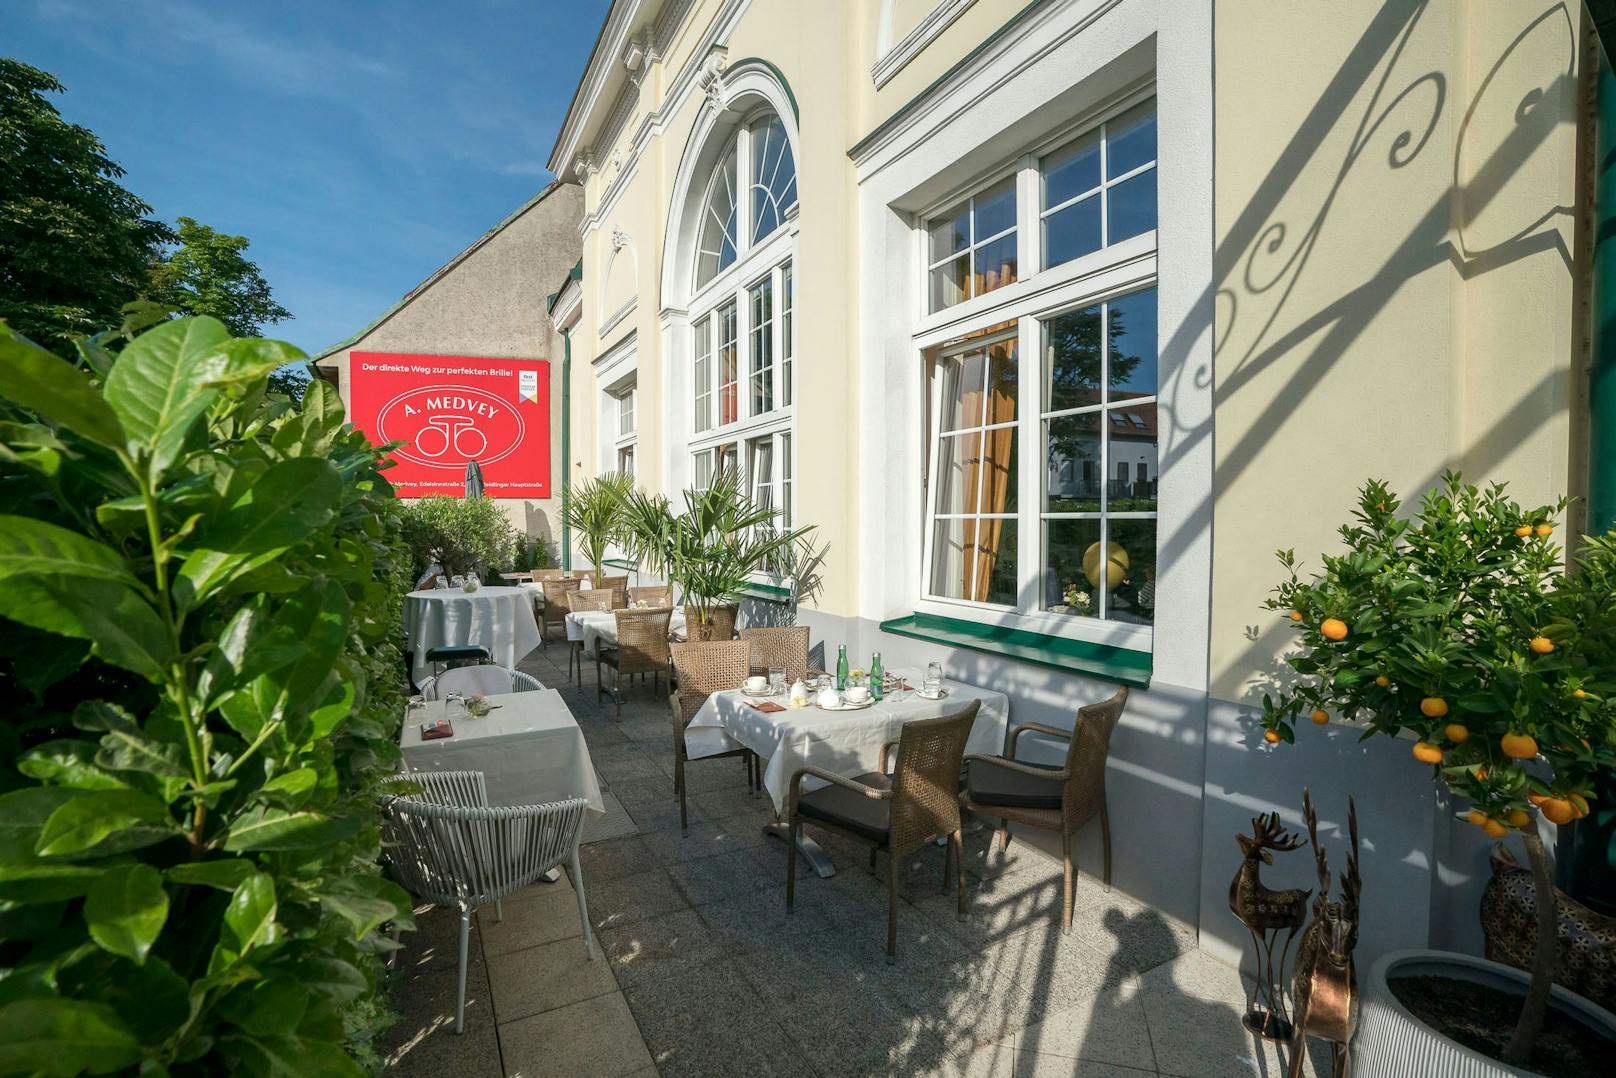 Das Restaurant mit Palais-Ambiente bietet auch einen Gastgarten mit 70 Sitzplätzen.